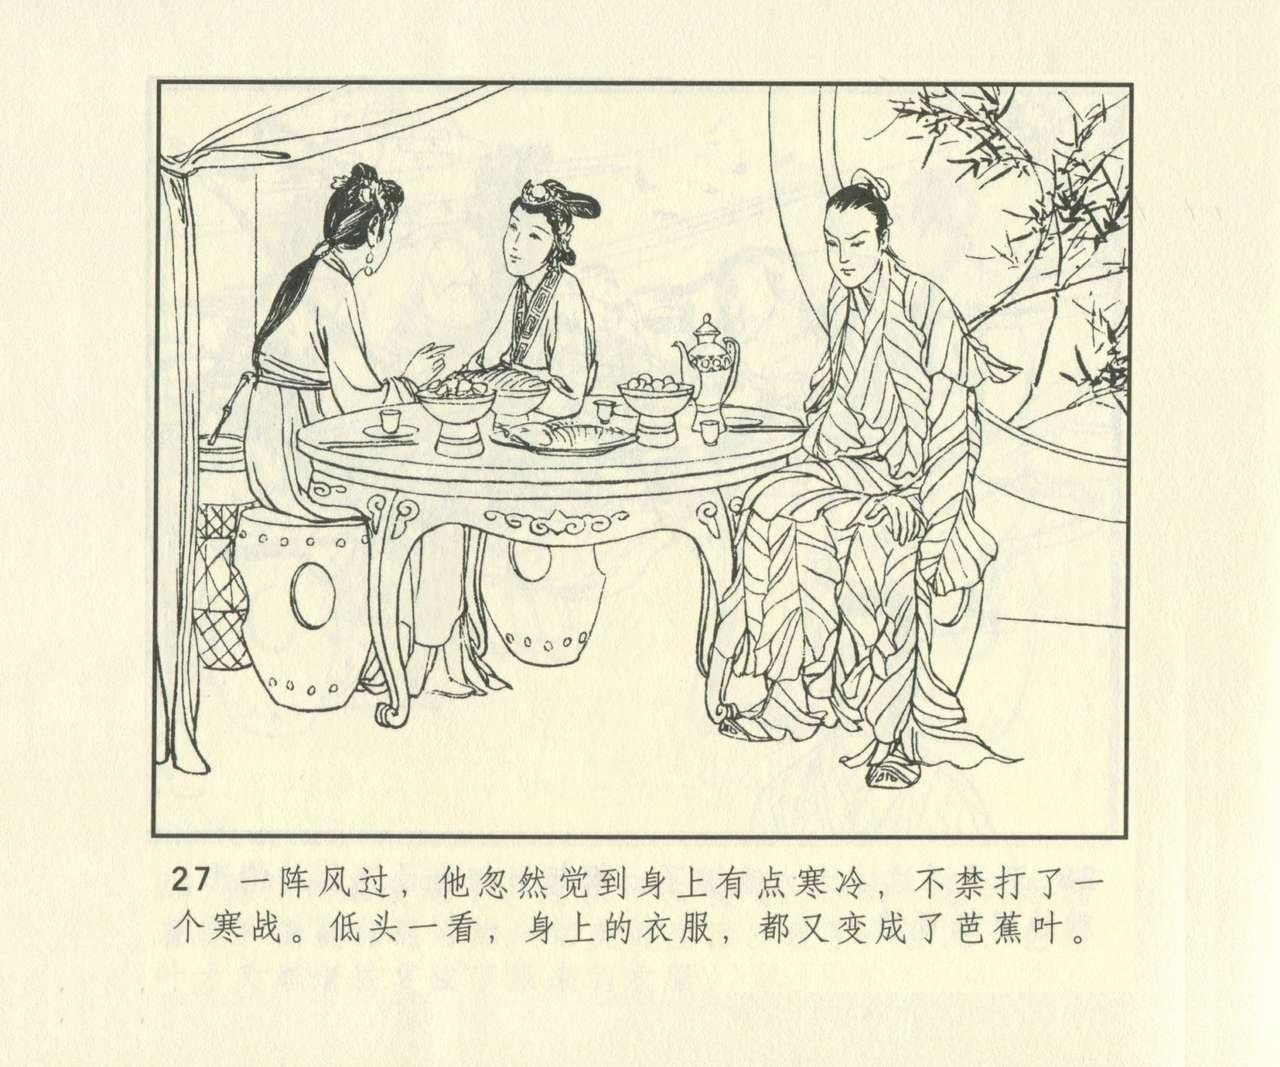 聊斋志异 张玮等绘 天津人民美术出版社 卷二十一 ~ 三十 643